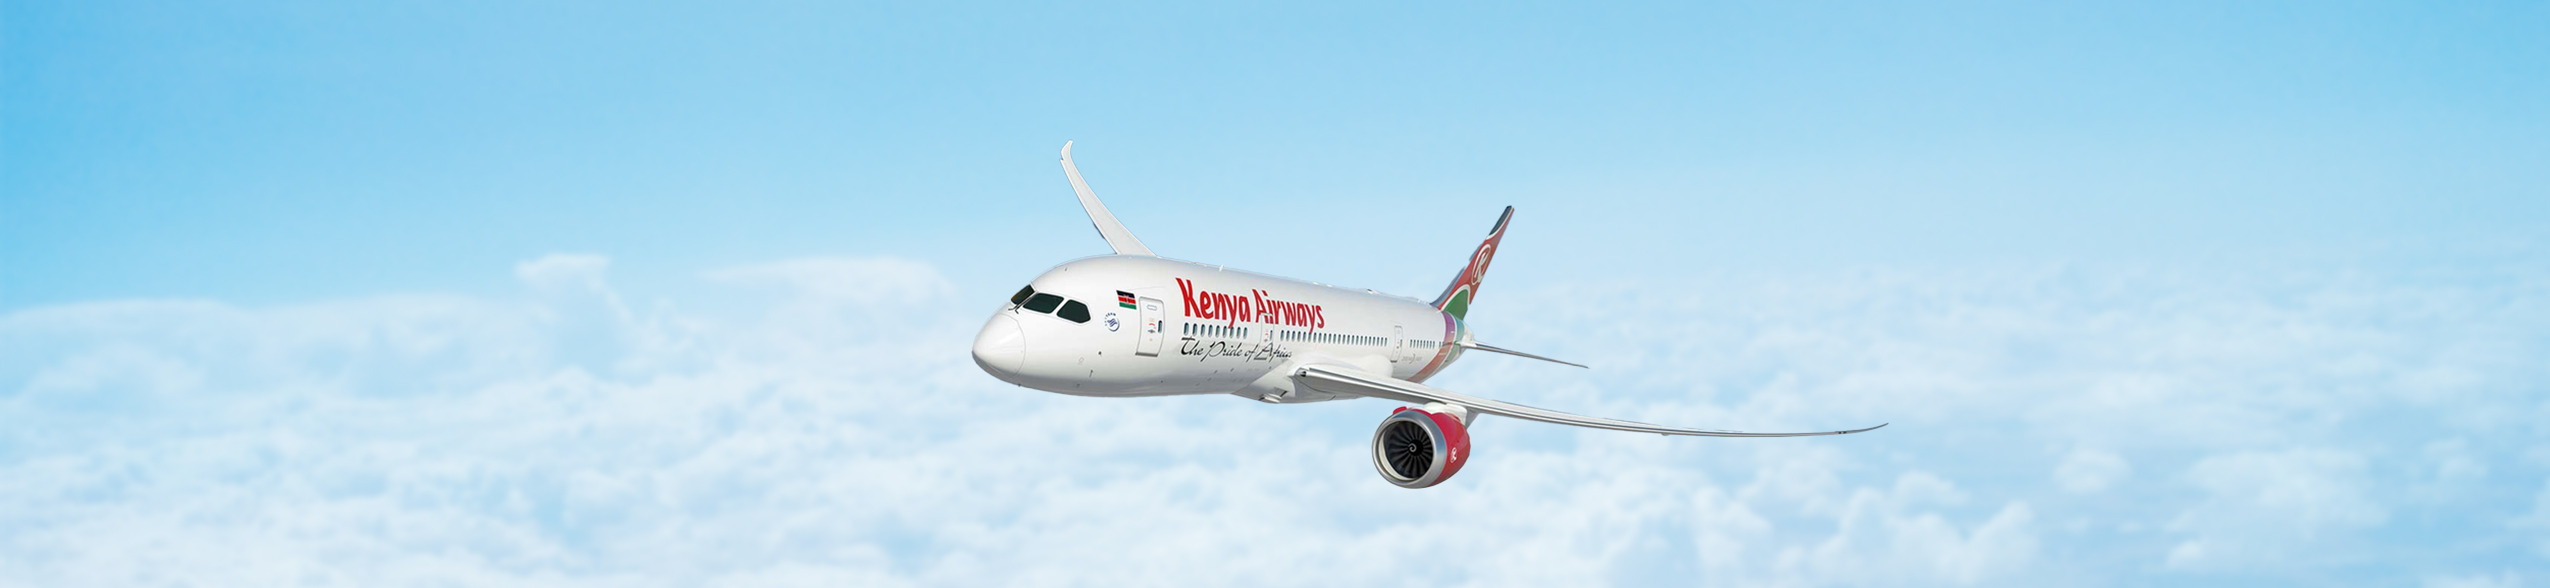 Vipper.com partners with Kenya Airways | Vipper.com